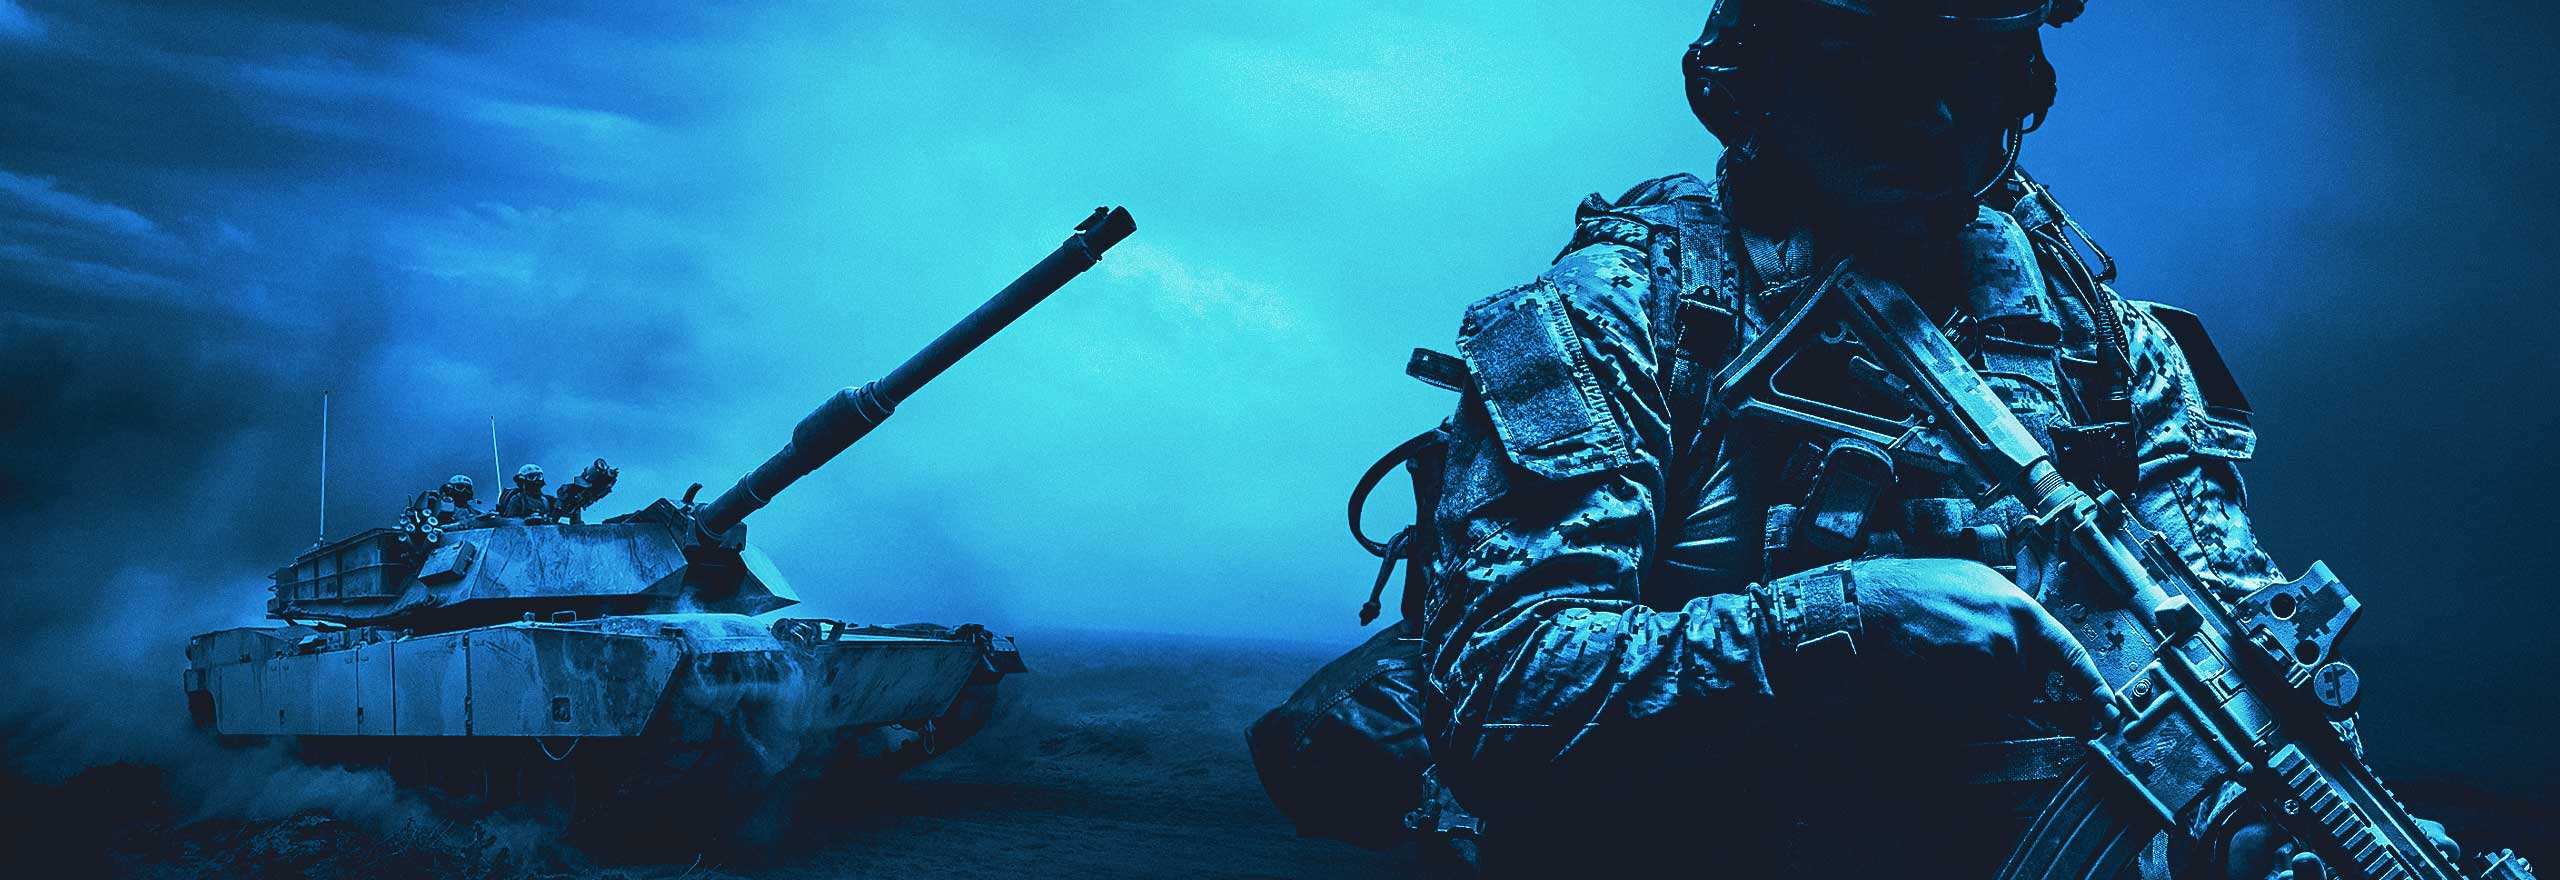 Imagem colorida em azul apresentando um soldado, tanque e helicópteros.